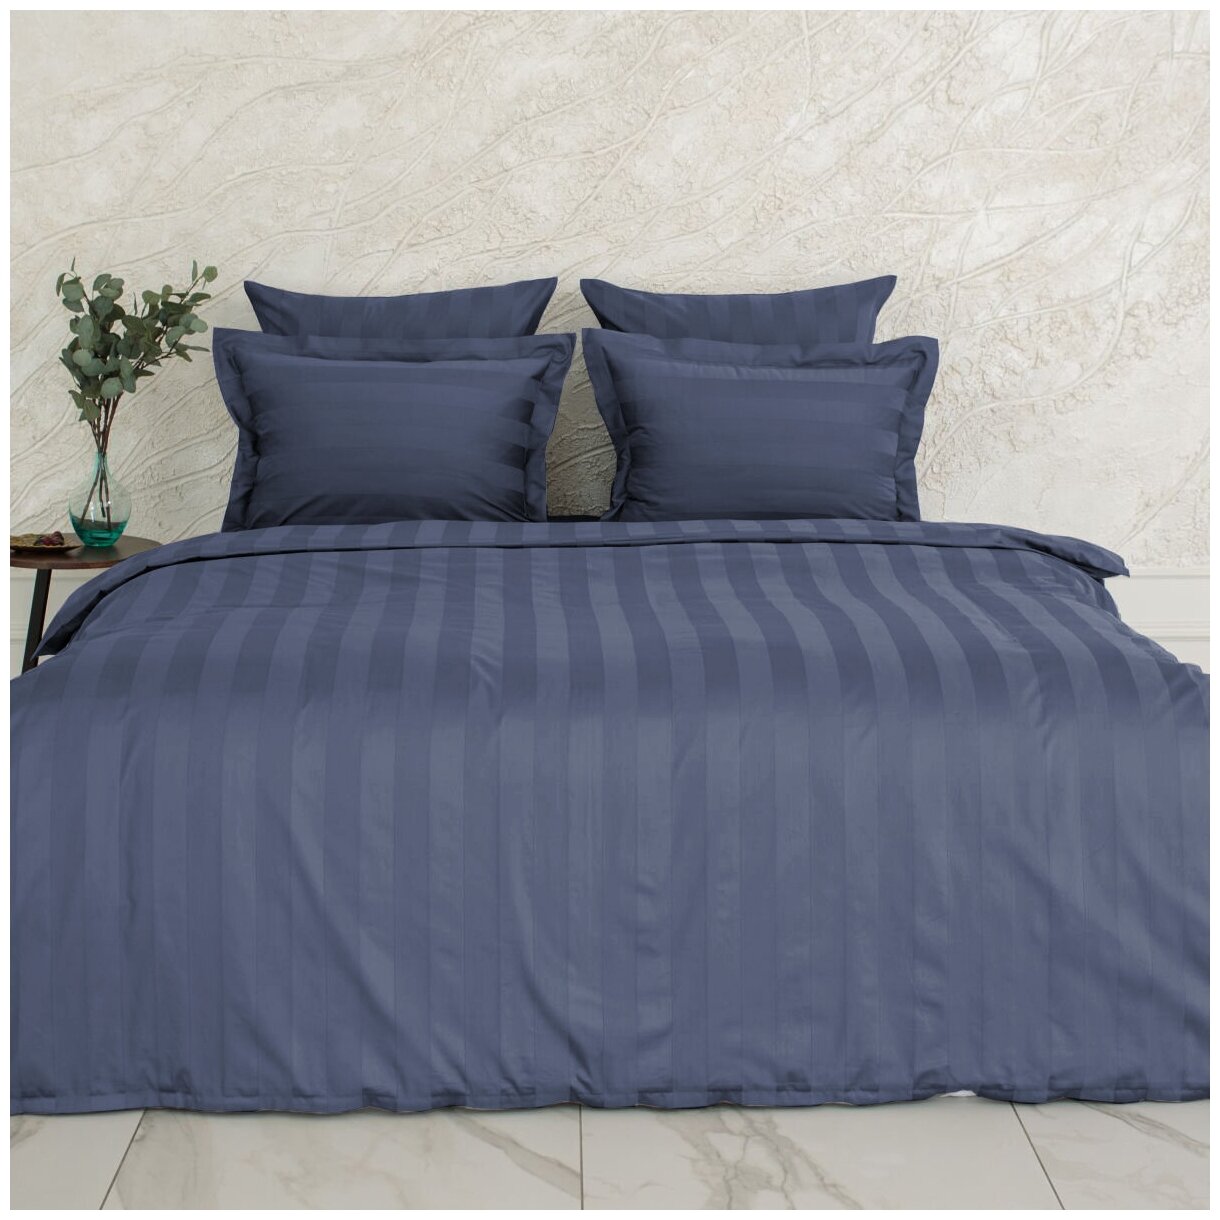 Комплект постельного белья La Prima постельное бельё мако-сатин сапфировый, размер Евро (200x220см)